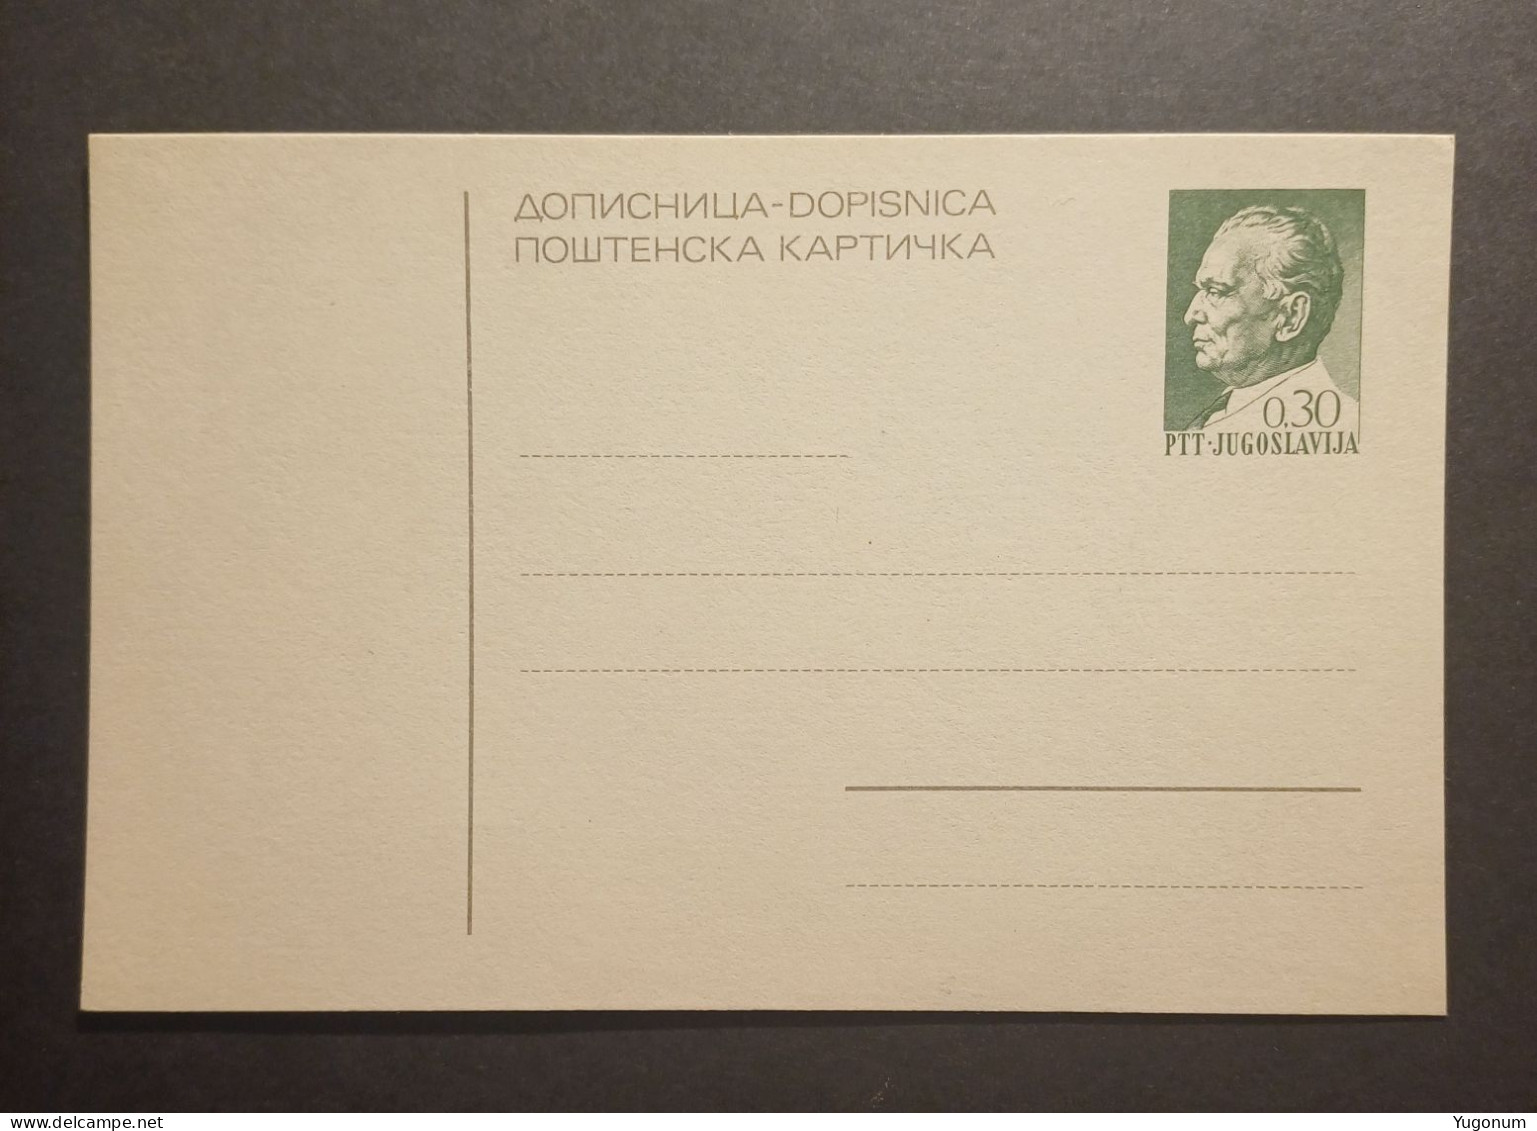 Yugoslavia Slovenia 1970's Unused Stationary Card "dopisnica" With Preprinted 0,30 Dinara Tito Stamp (No 3015) - Briefe U. Dokumente